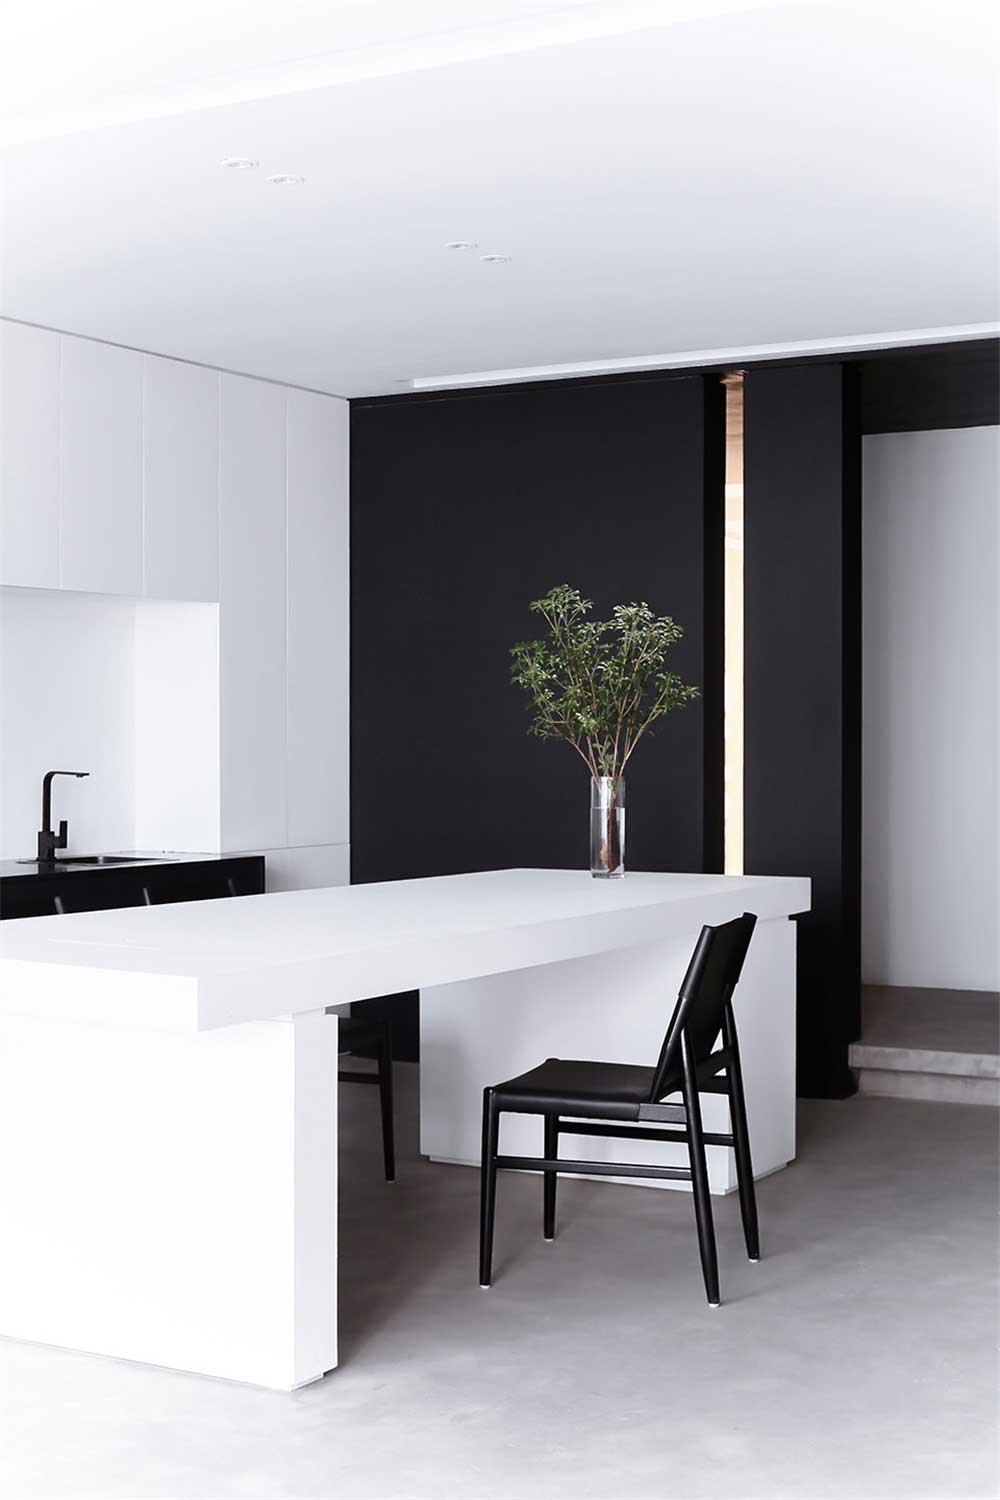 深圳现代简约风格黑白色调办公室设计装修——水吧台